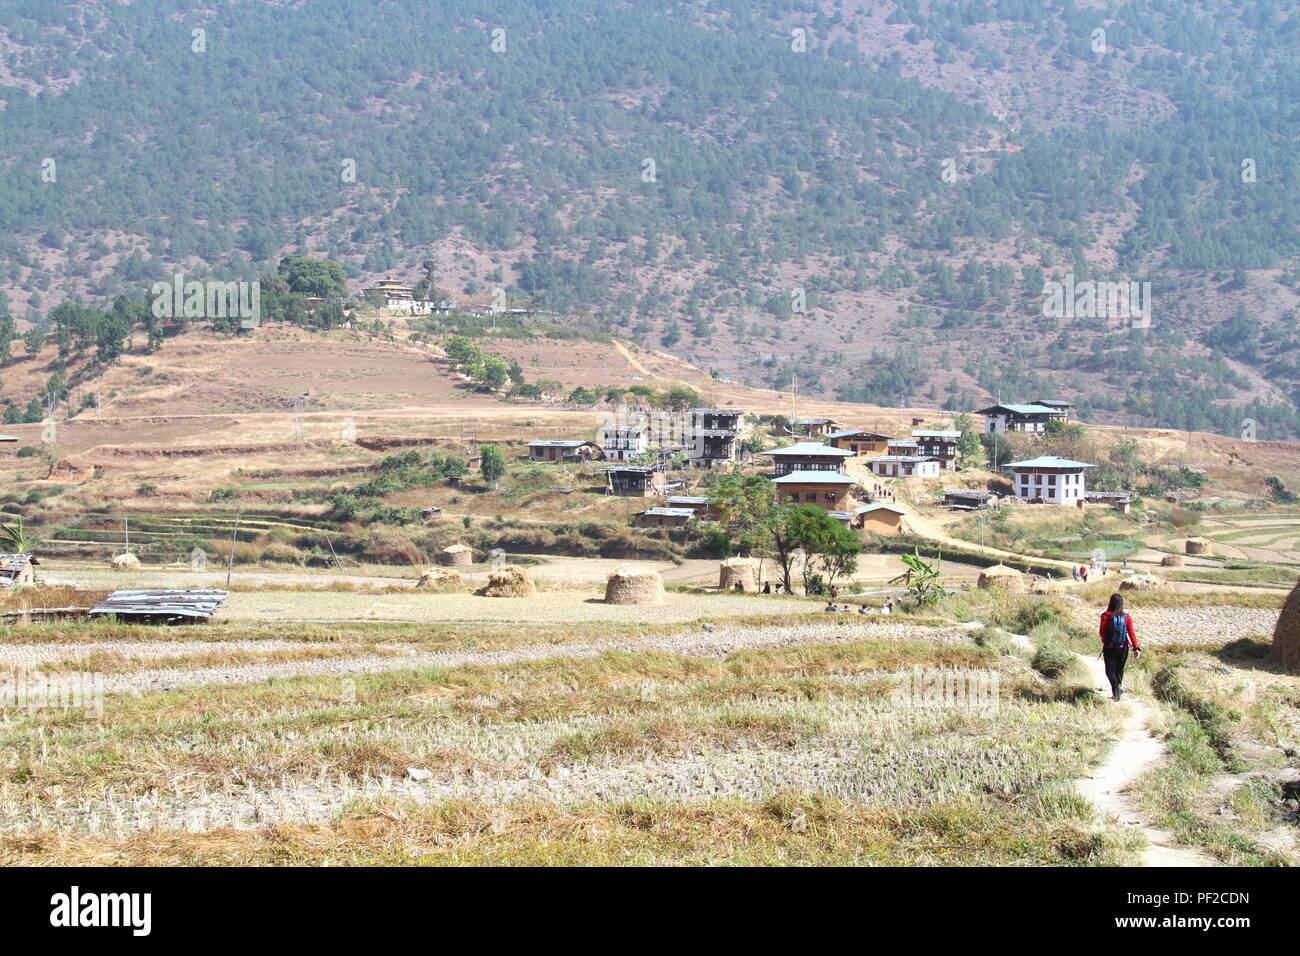 Les touristes en se promenant dans les rizières après la récolte en direction de Chimi Lakhang carillon ou Lhakhang temple, monastère bouddhiste dans le district de Punakha, Bhoutan Banque D'Images